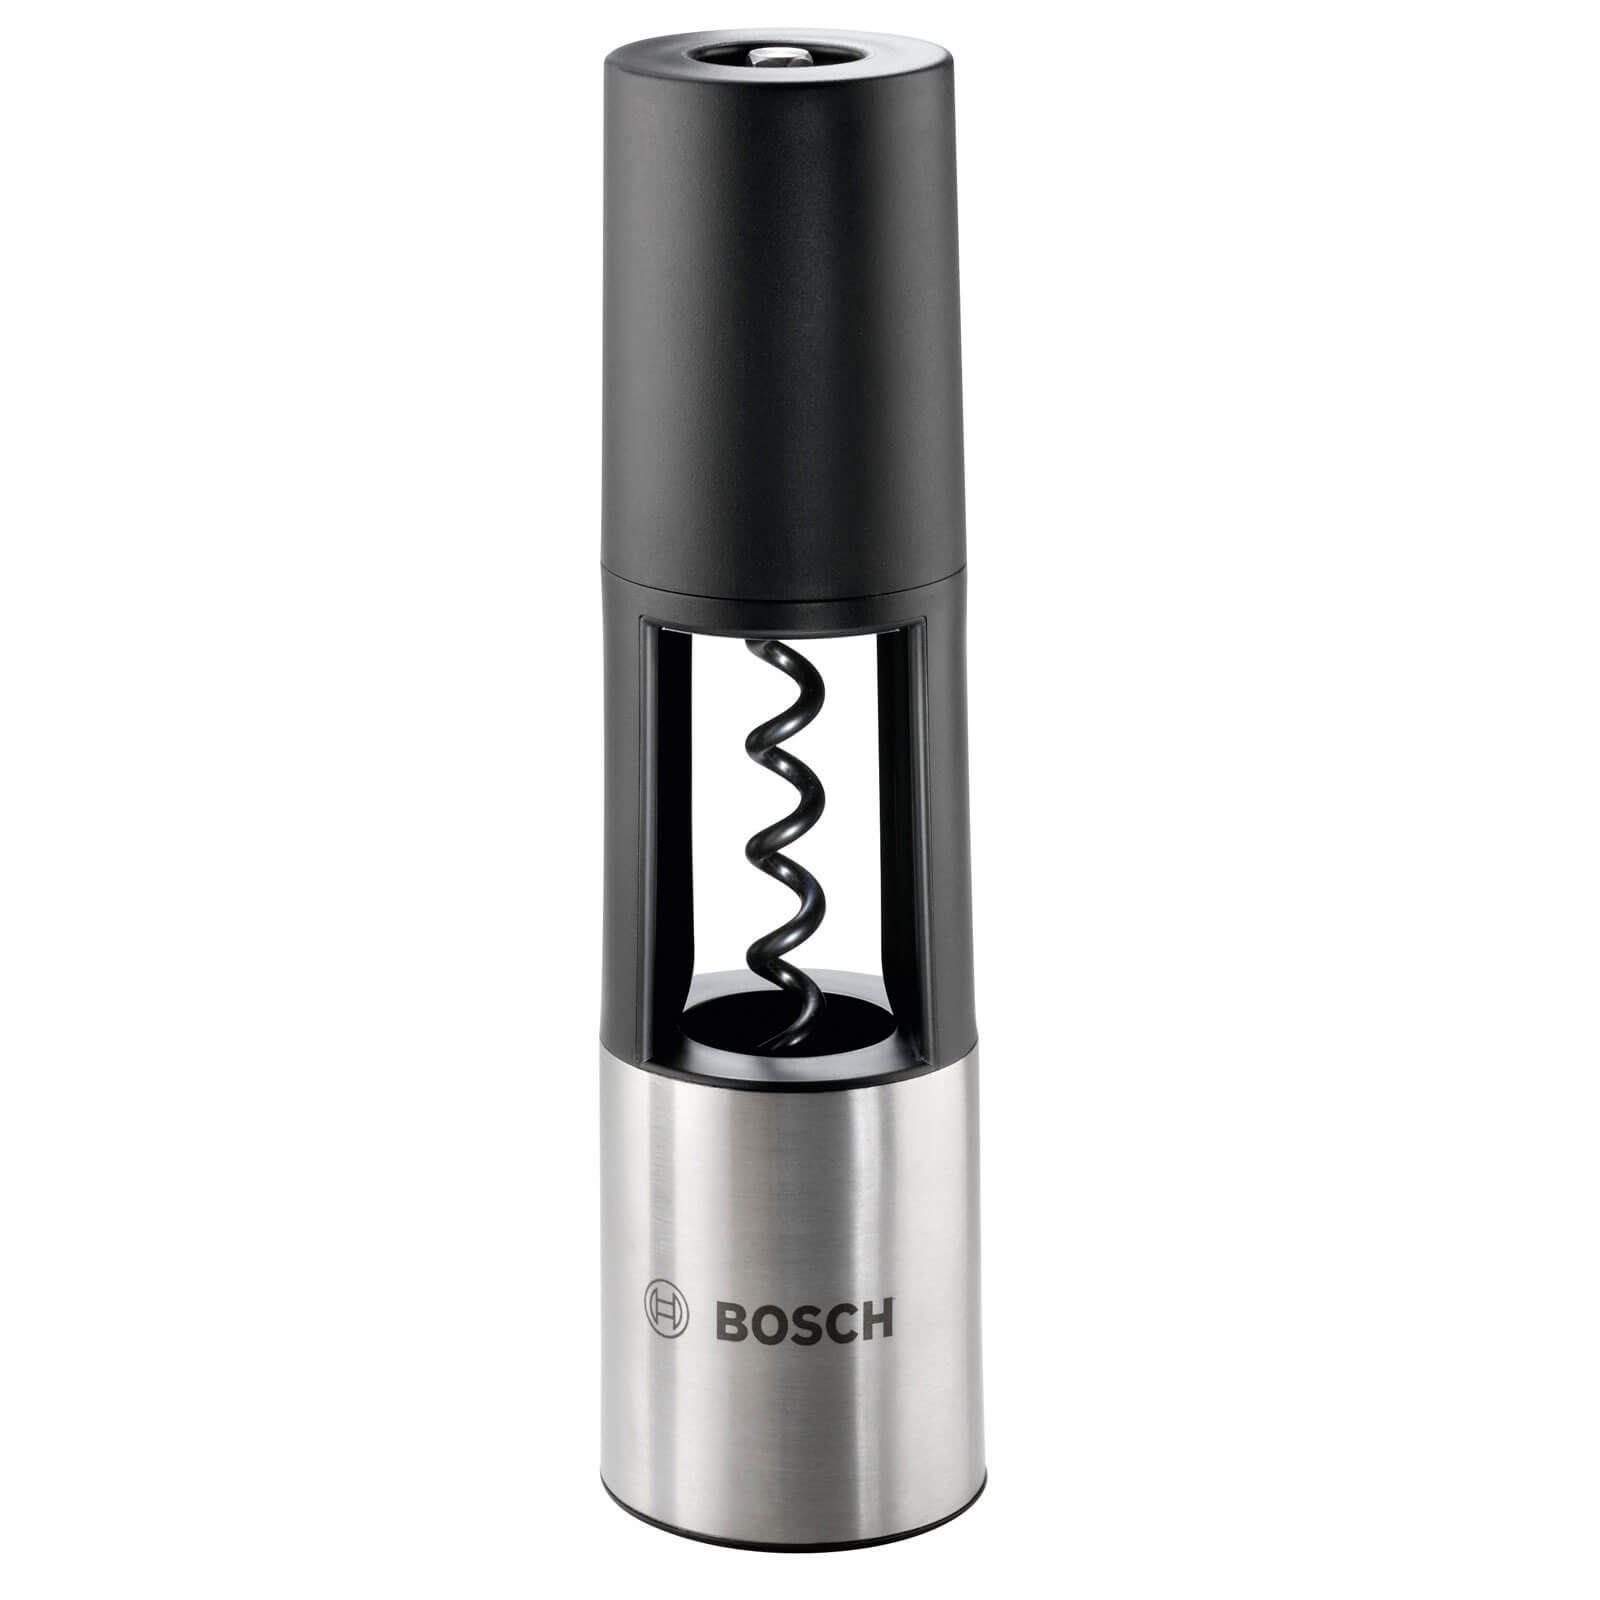 Image of Bosch IXO Vino Corkscrew Attachment for IXO Screwdrivers